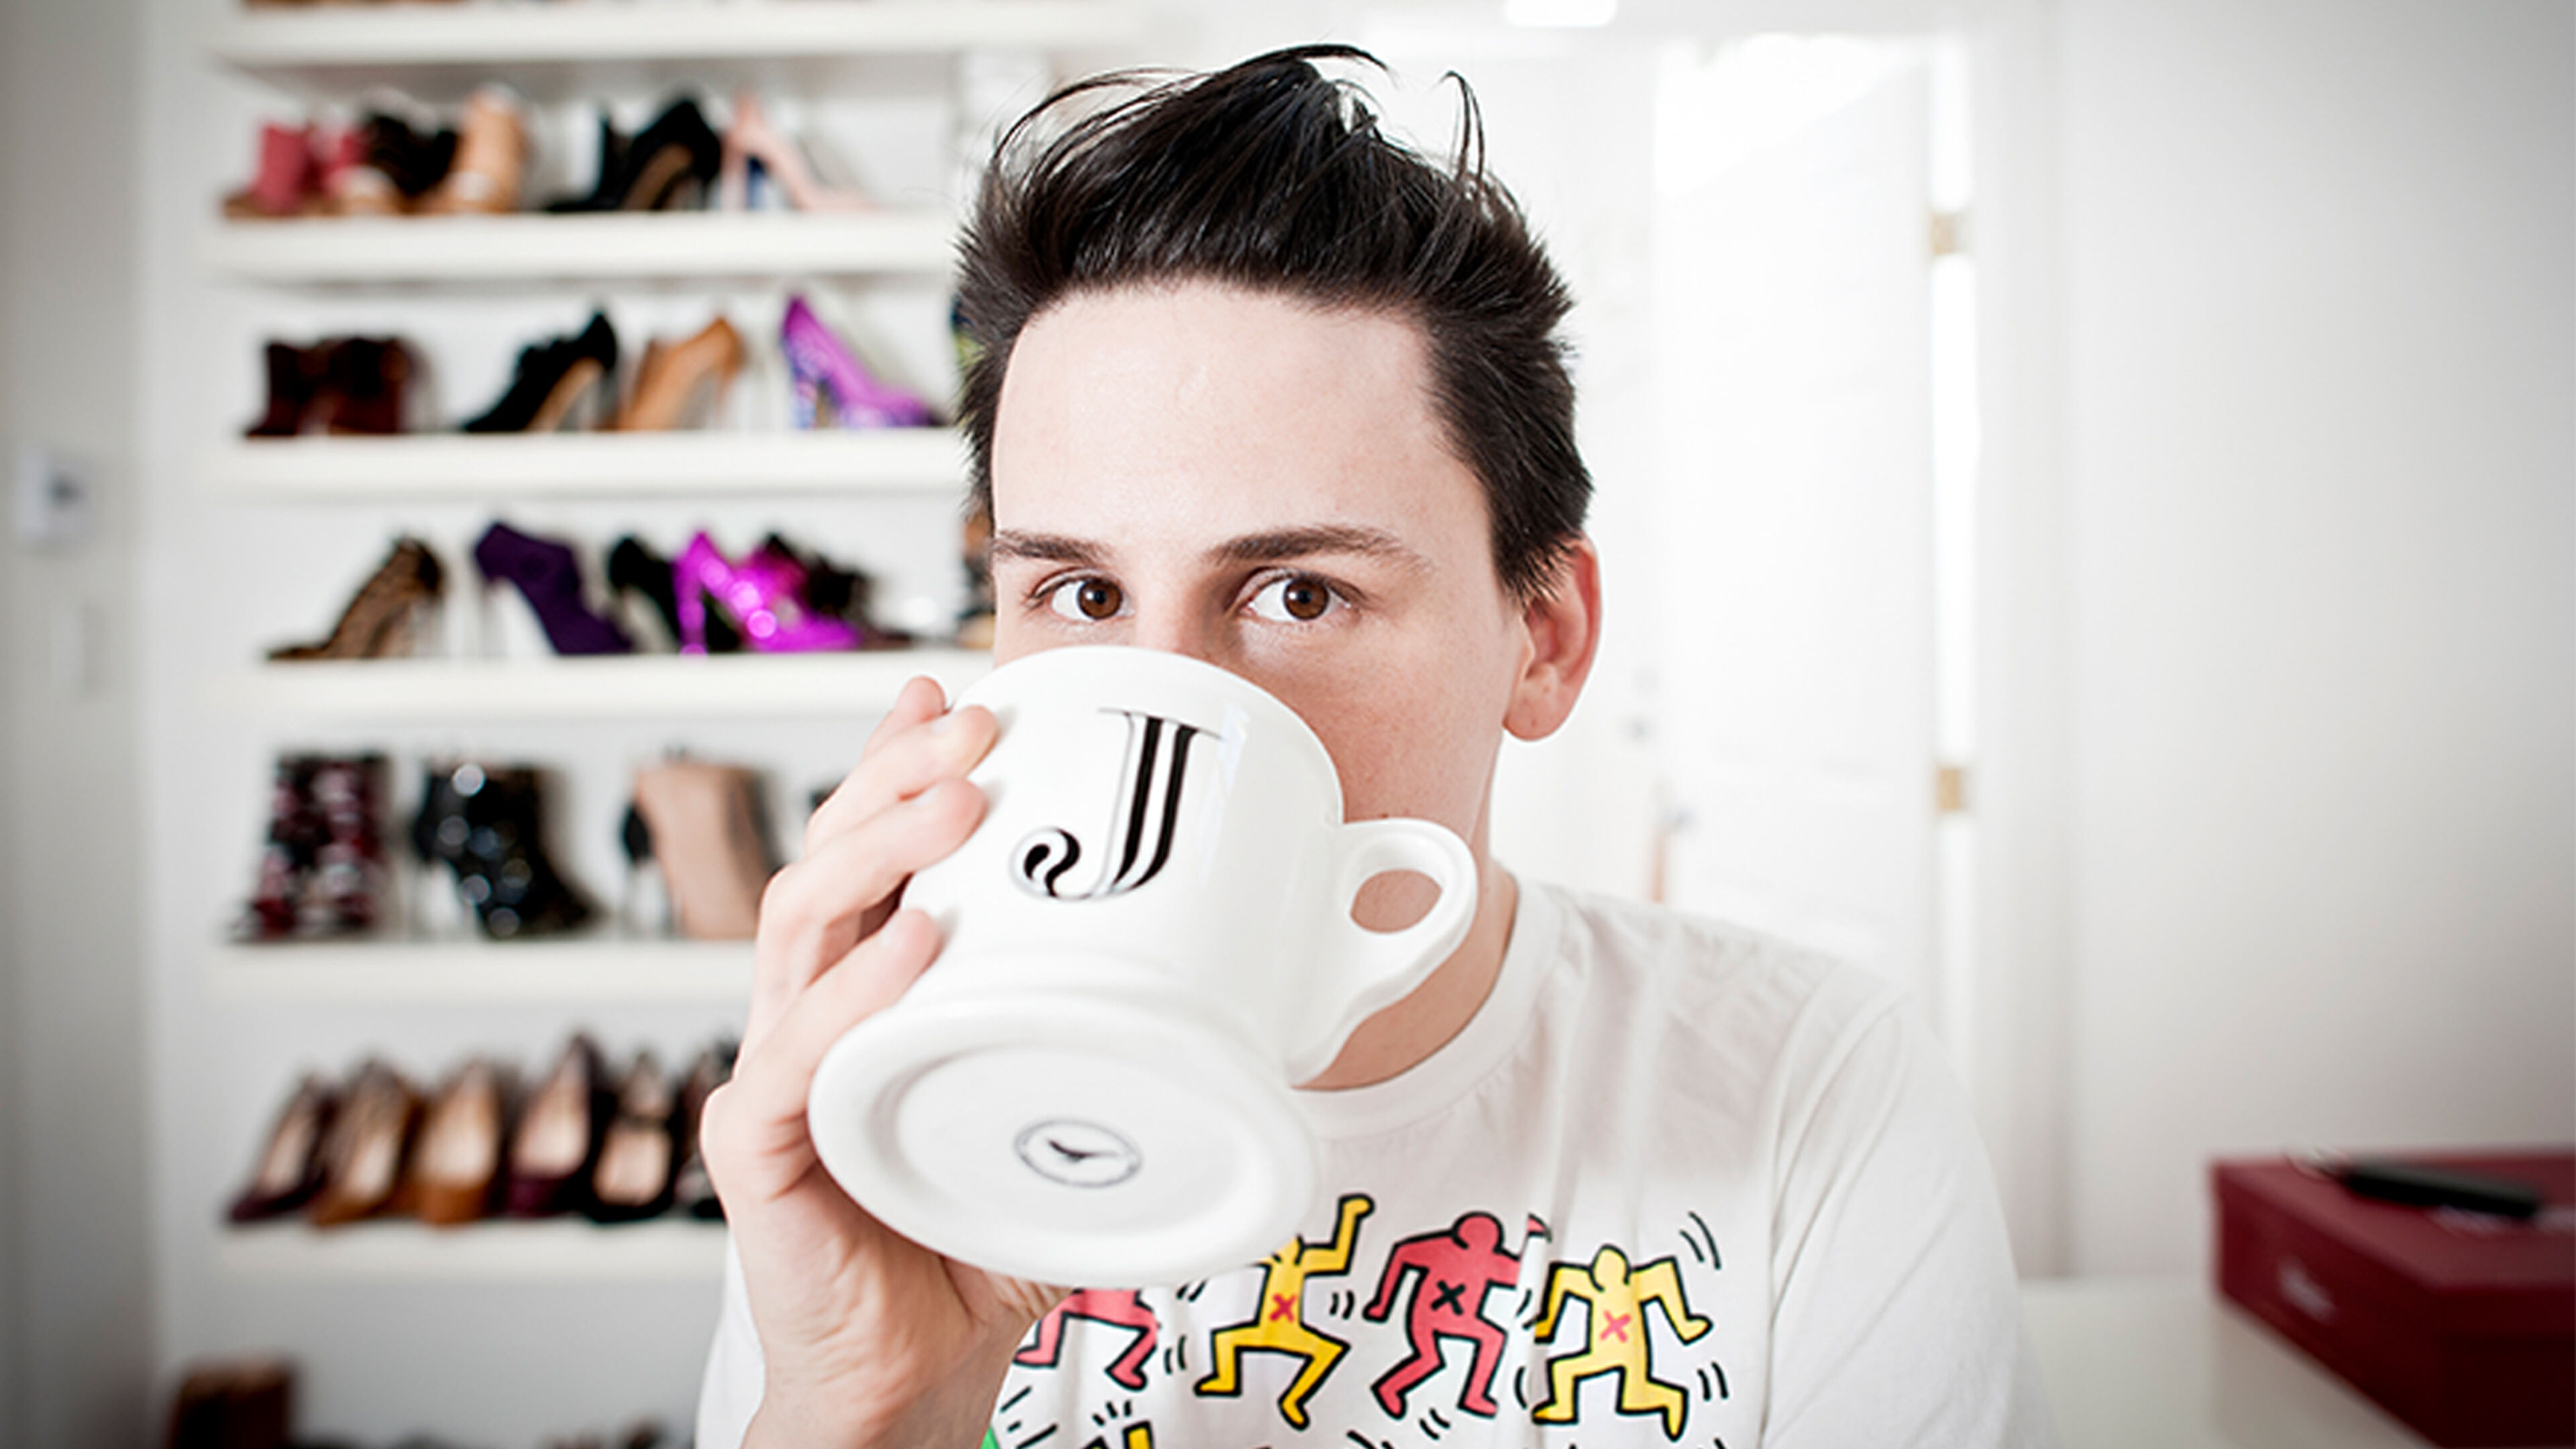 Un jeune homme à la coiffure moderne boit dans une tasse à café au design créatif, son regard croisant celui de l'appareil, sur fond d'une collection de chaussures colorées.